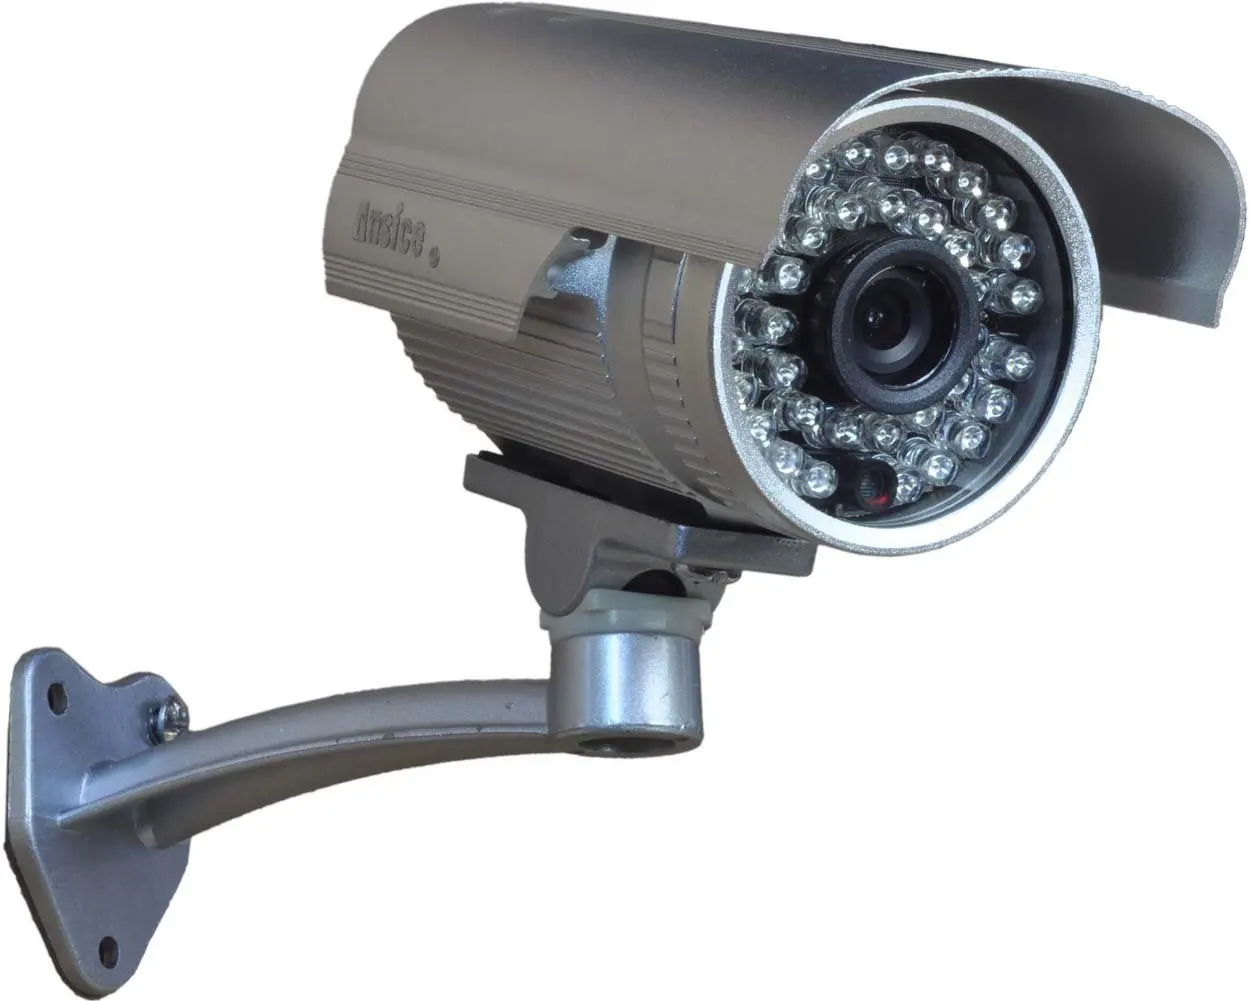 Уличная камера с выводом на телефон. Видеокамера Pelco 600 ТВЛ. IP-видеокамера уличная Arax RNW-202-v550ir. Камера ahd713-10x. EVL-ig40-10b уличная AHD видеокамера, 720p, f=2.8-12мм, темно-серая.